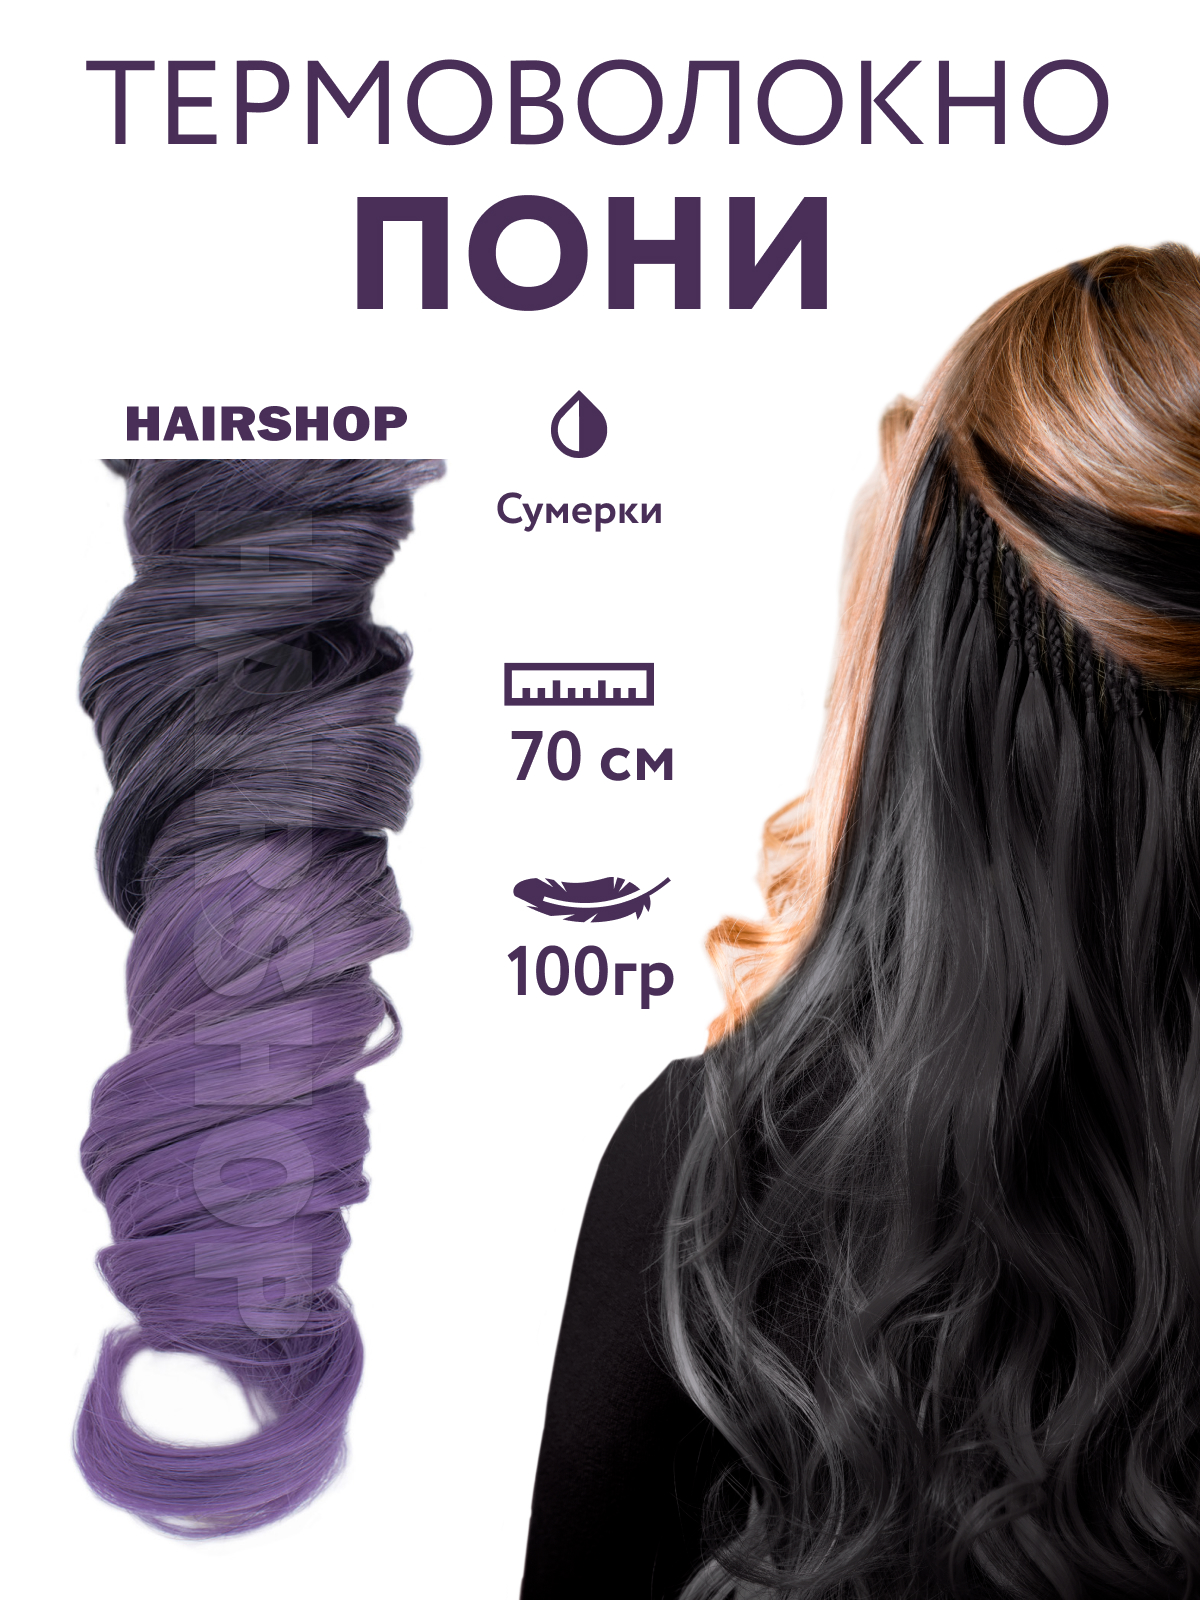 Канекалон Hairshop Пони HairUp для точечного афронаращивания Сумерки 1,4м декоративный лак hi lac 2051 hi 052 12 мл городские сумерки